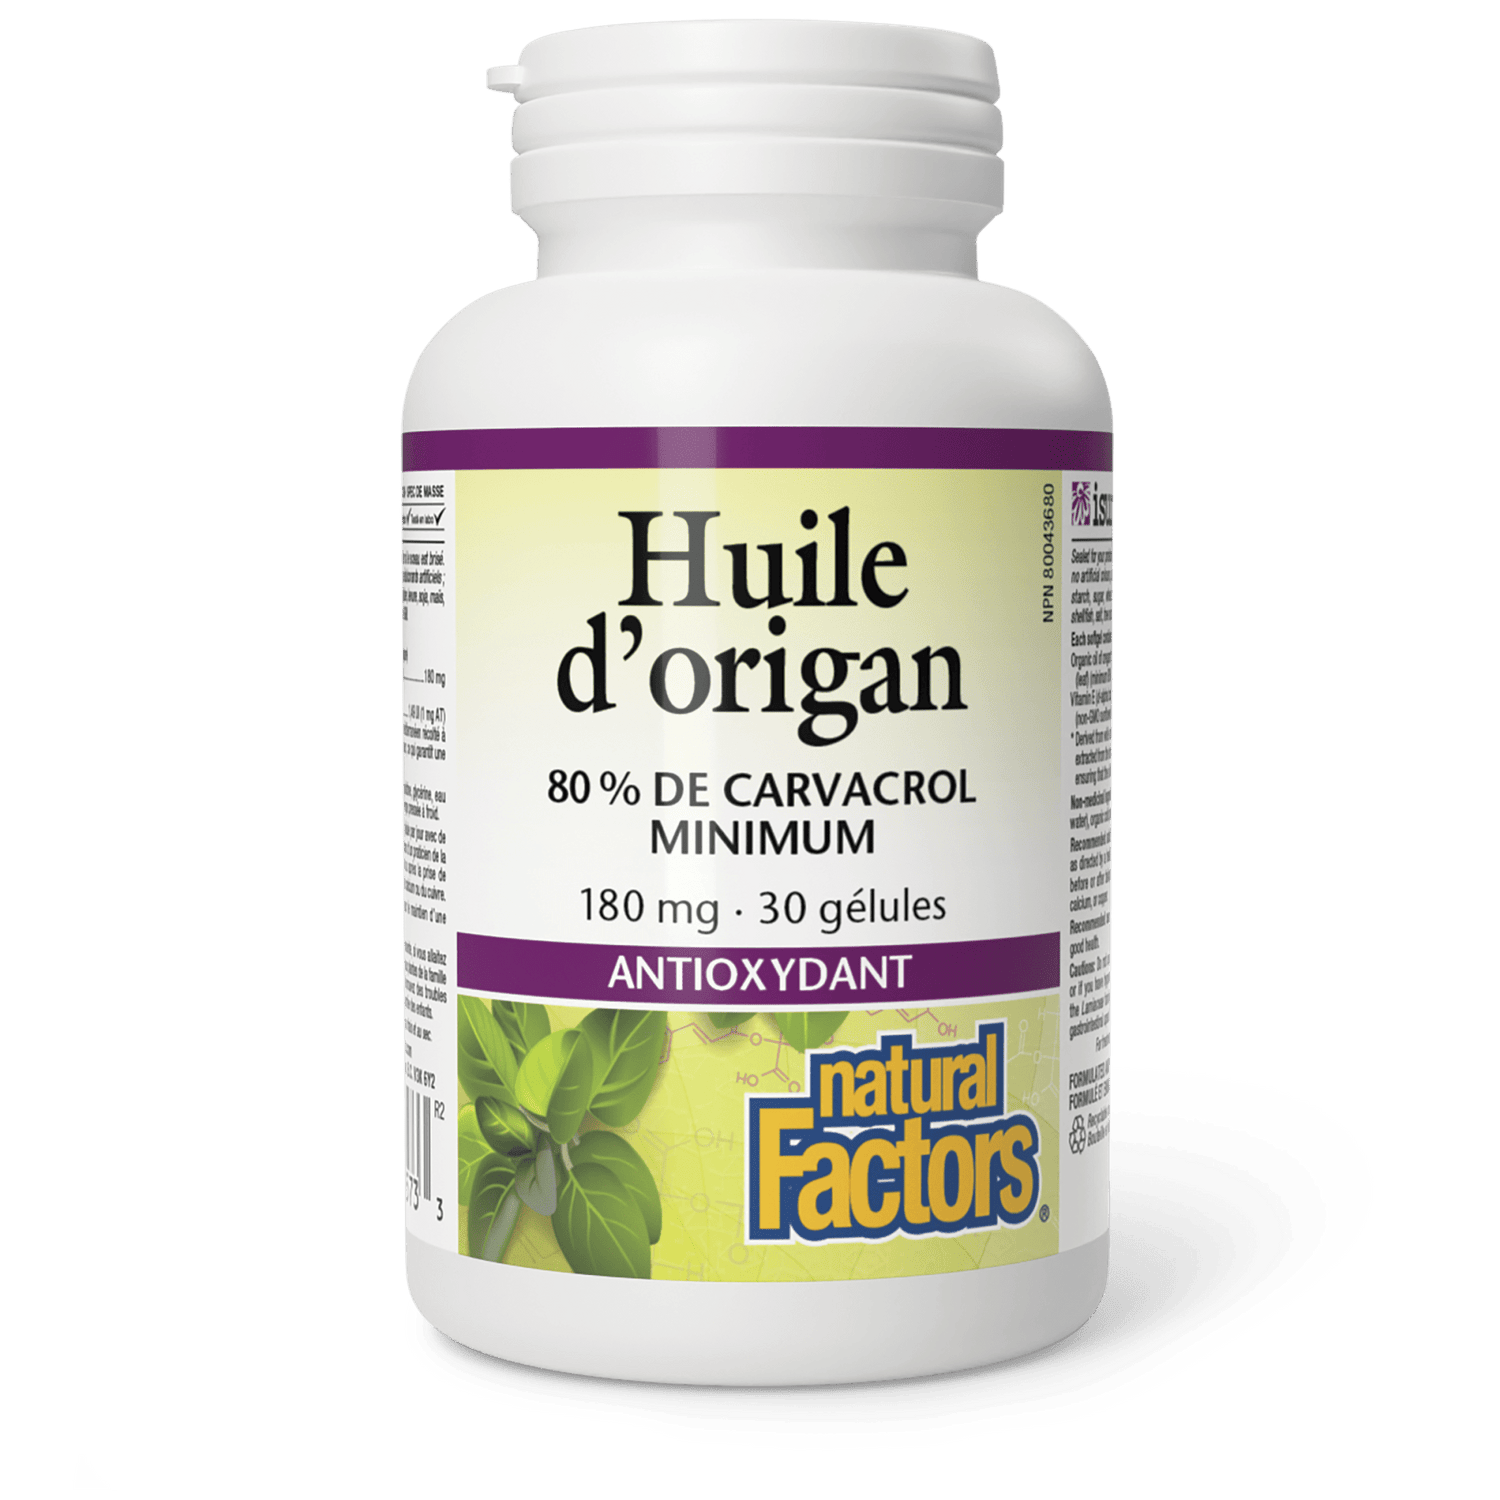 Huile d’origan 180 mg, Natural Factors|v|image|4573